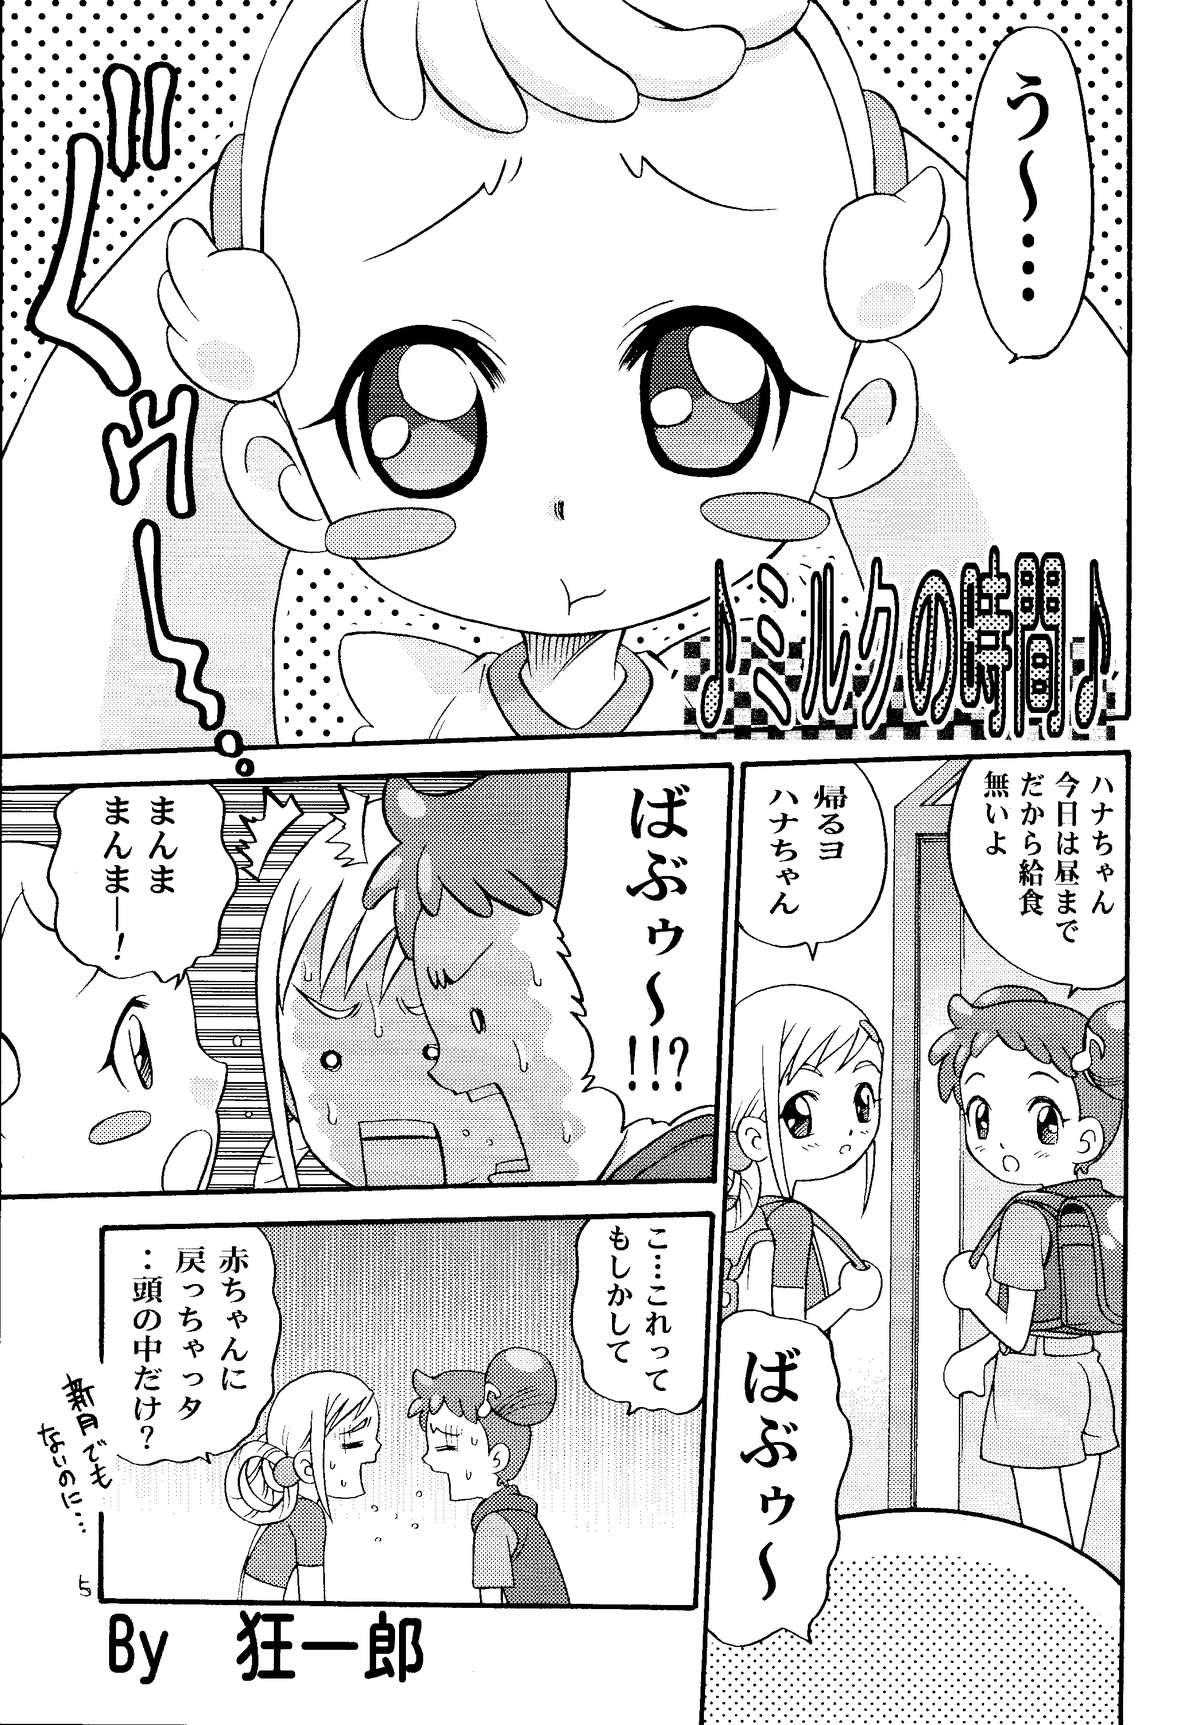 Teenage Ohanami - Ojamajo doremi Behind - Page 4